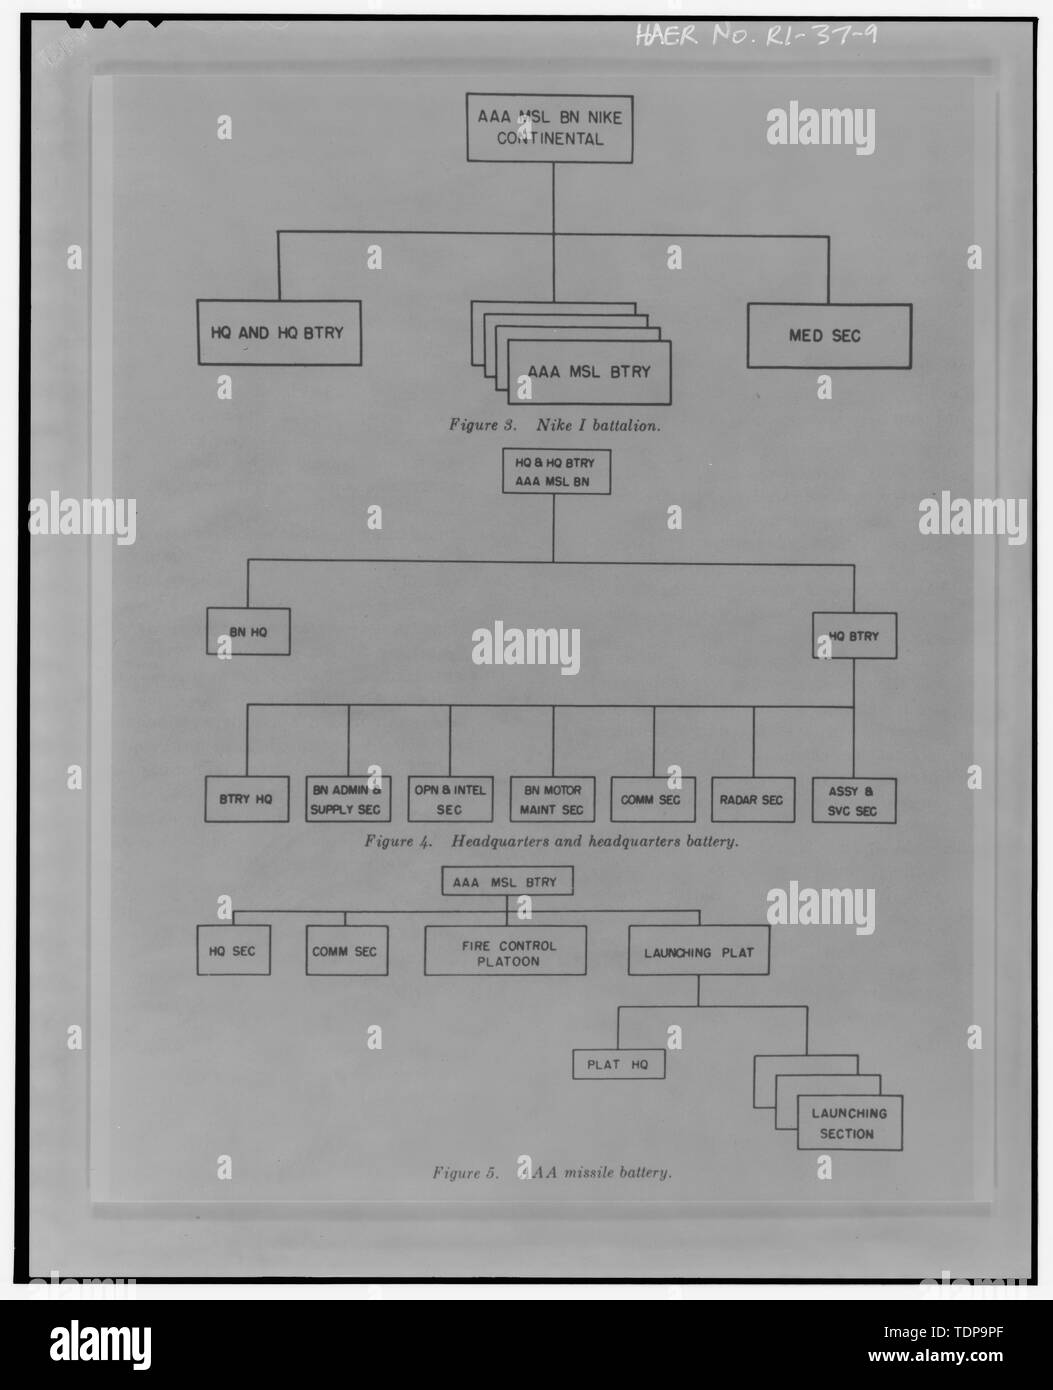 Fotocopia del diagrama de flujo del Comando del Batallón de Nike, la sede  de la batería Batería de misiles y de procedimientos y simulacros para Nike  Ajax System, Departamento del Manual de